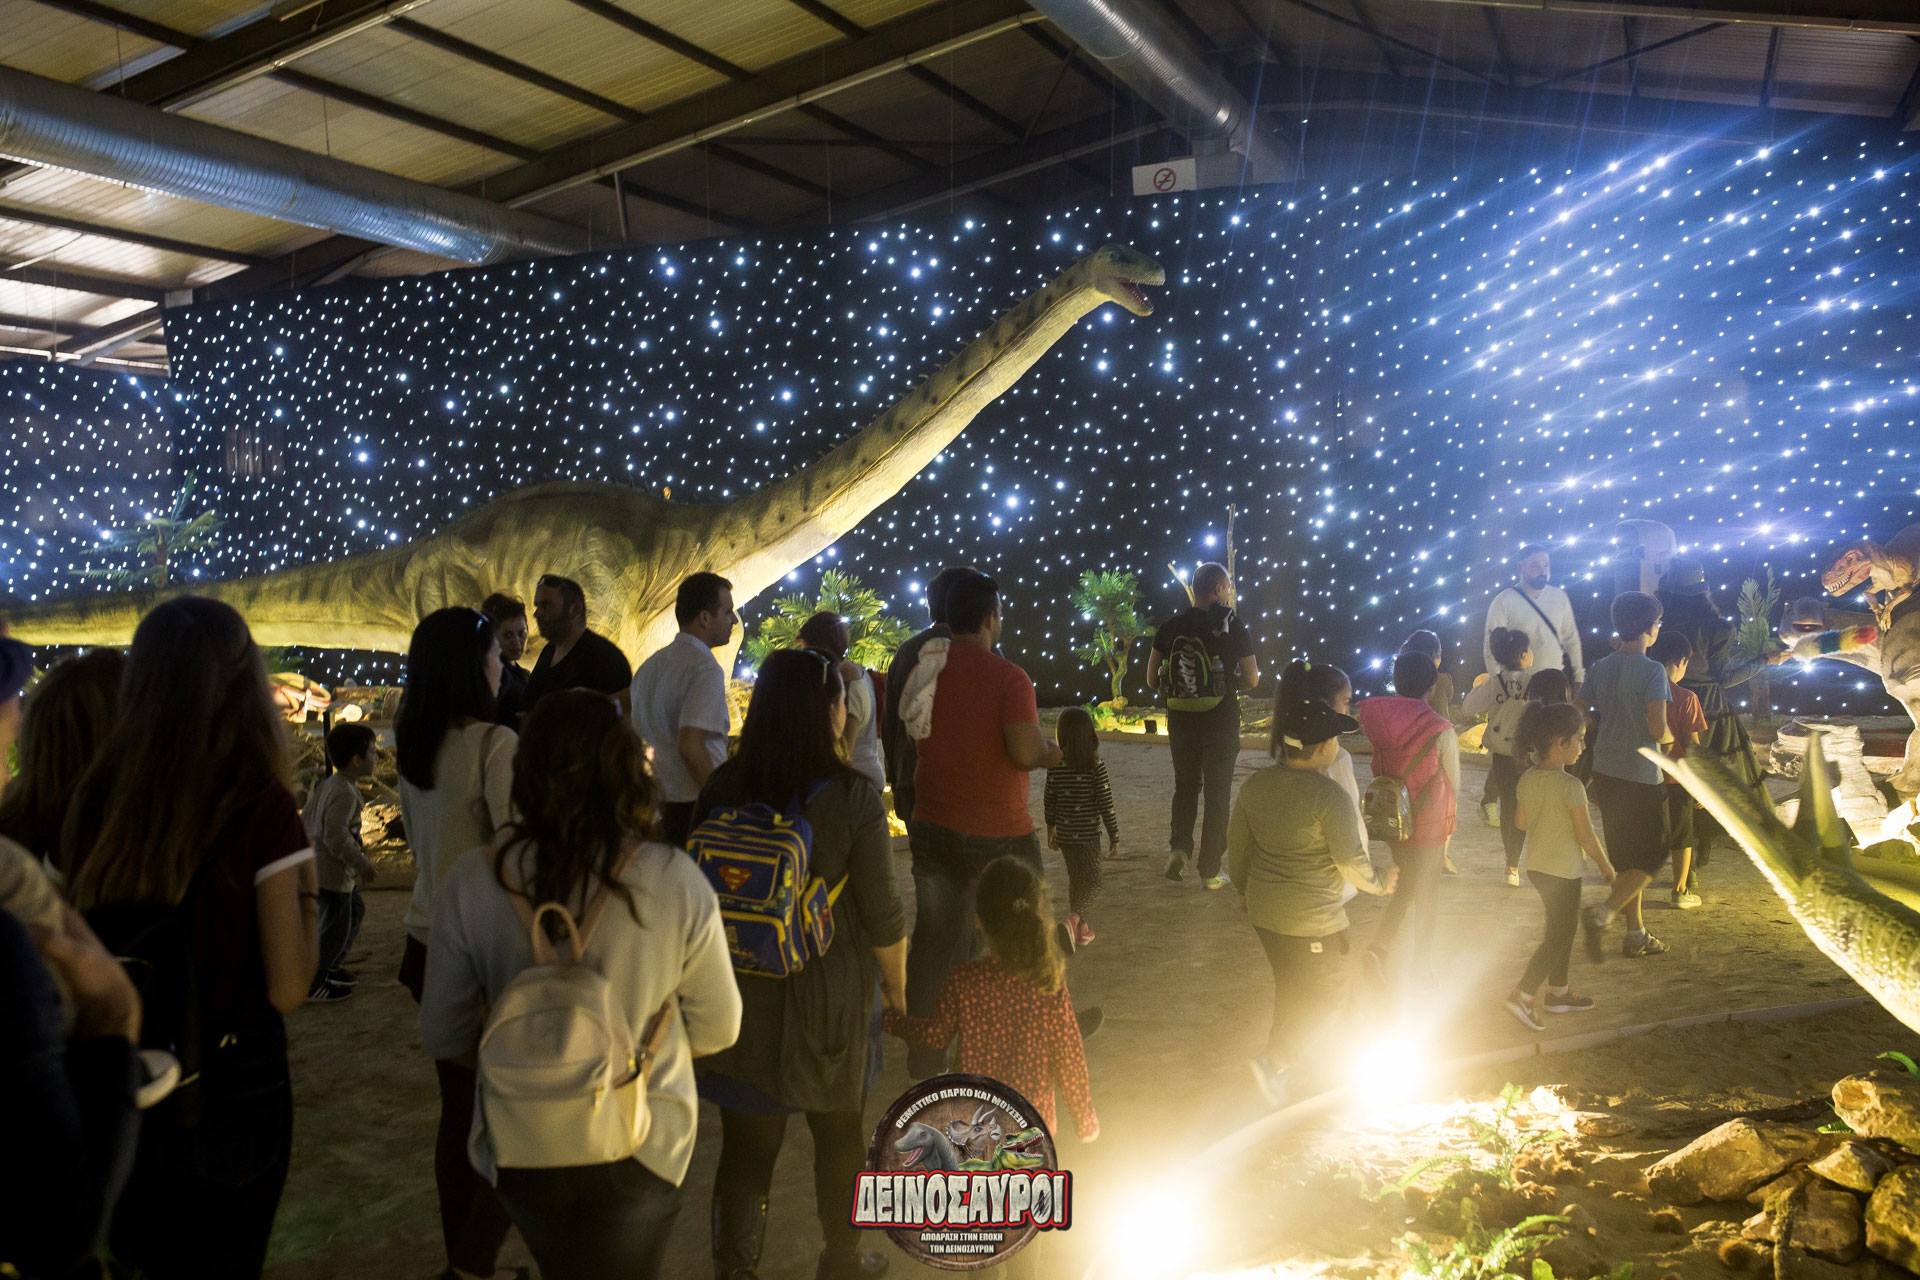 Ο μαγικός κόσμος των δεινοσαύρων έρχεται στην Αθήνα!